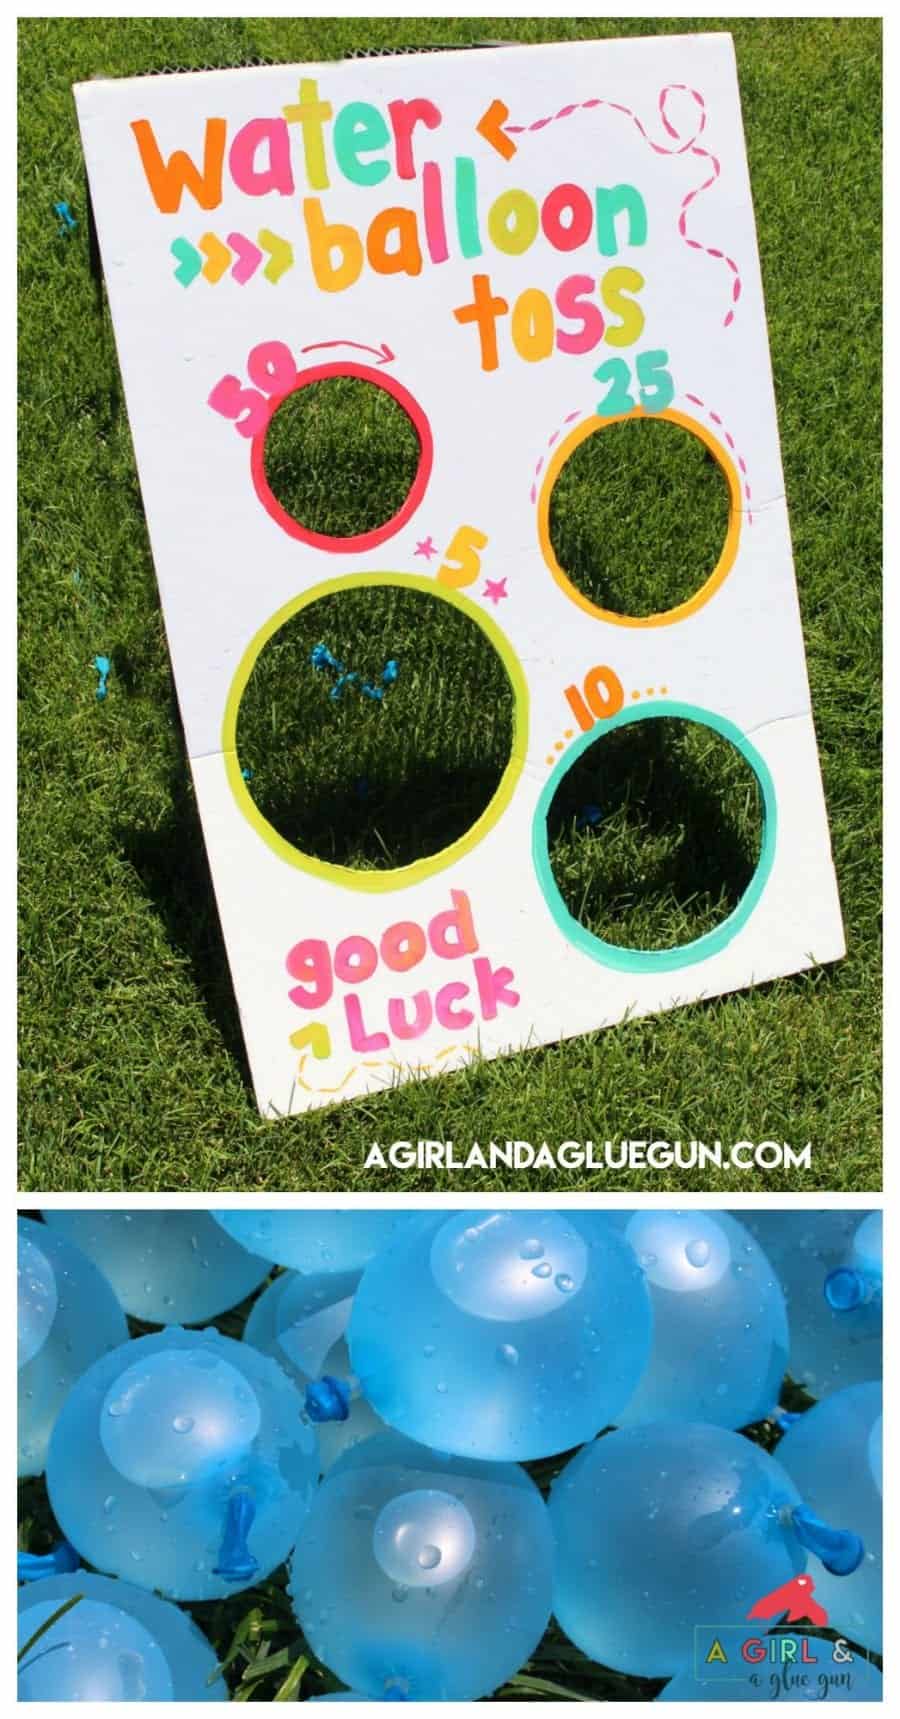 Water balloon toss-fun summer game - A girl and a glue gun